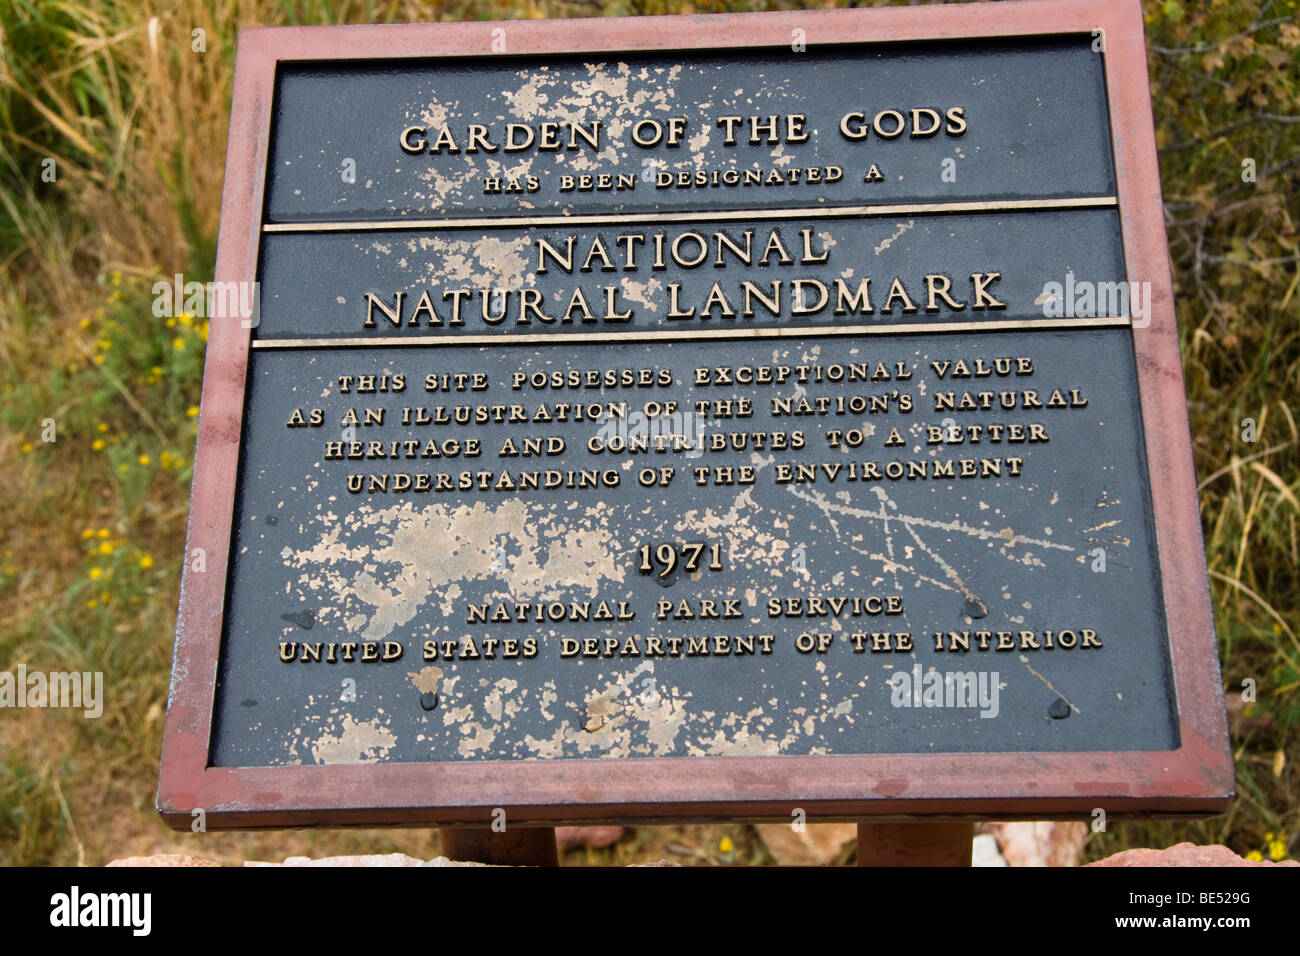 Garden of the Gods, National Natural Landmark sign, Colorado, USA Stock